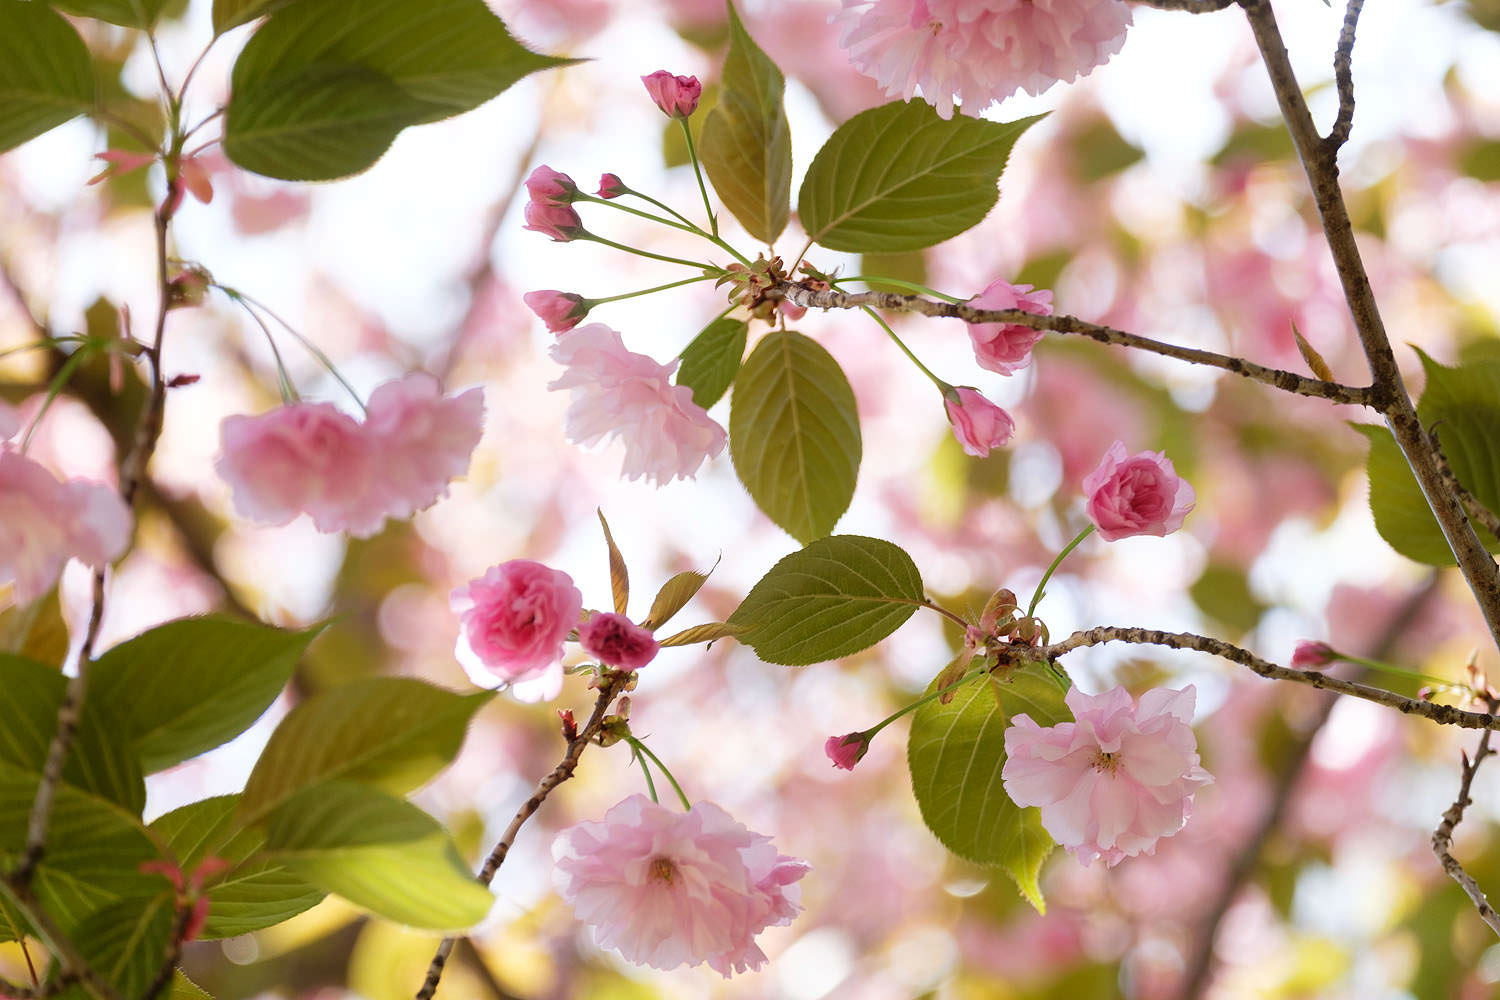 Kwanzan cherry blossoms in Reston